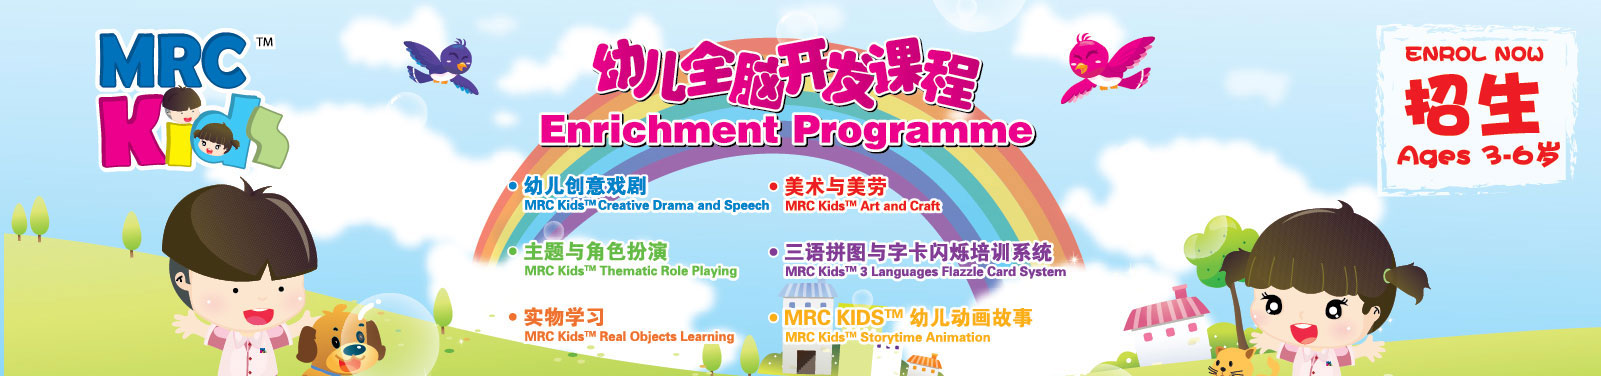 MRC Kids - Enrichment Programme